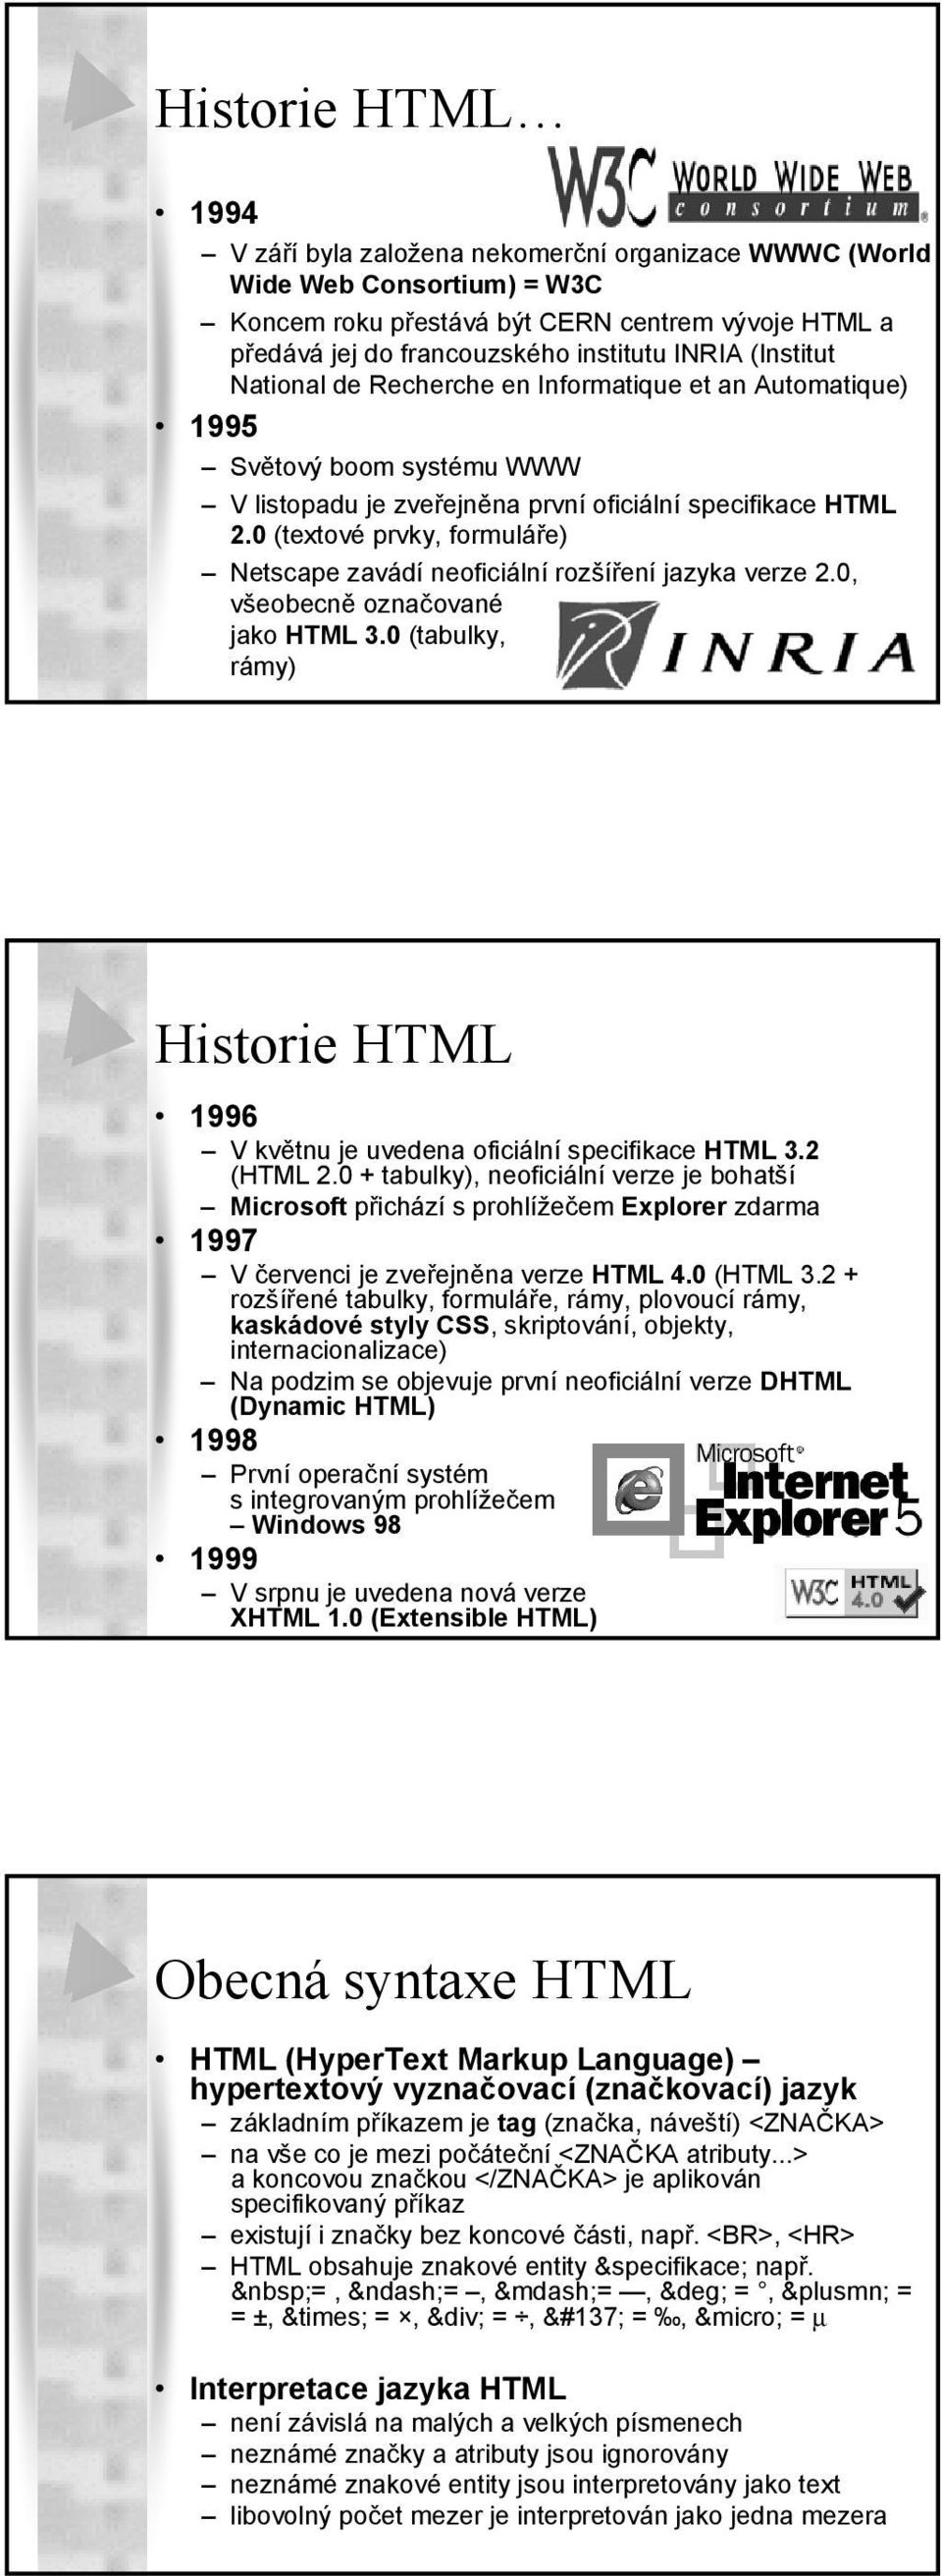 0 (textové prvky, formuláře) Netscape zavádí neoficiální rozšíření jazyka verze 2.0, všeobecně označované jako HTML 3.